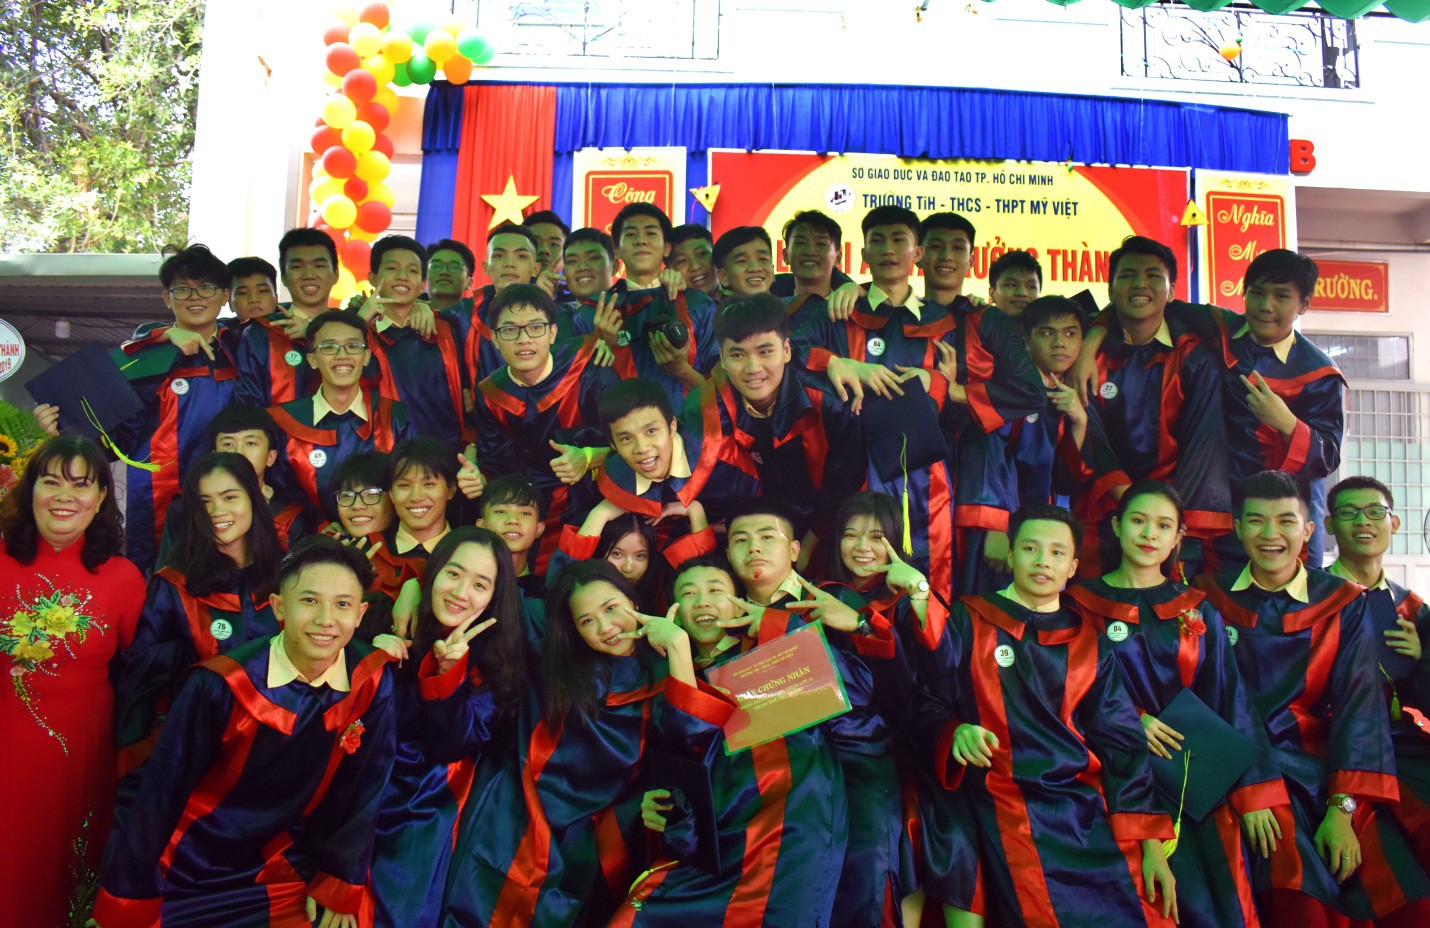 Nước mắt xen lẫn niềm vui trong lễ tri ân và trưởng thành của teen Mỹ Việt - Ảnh 10.